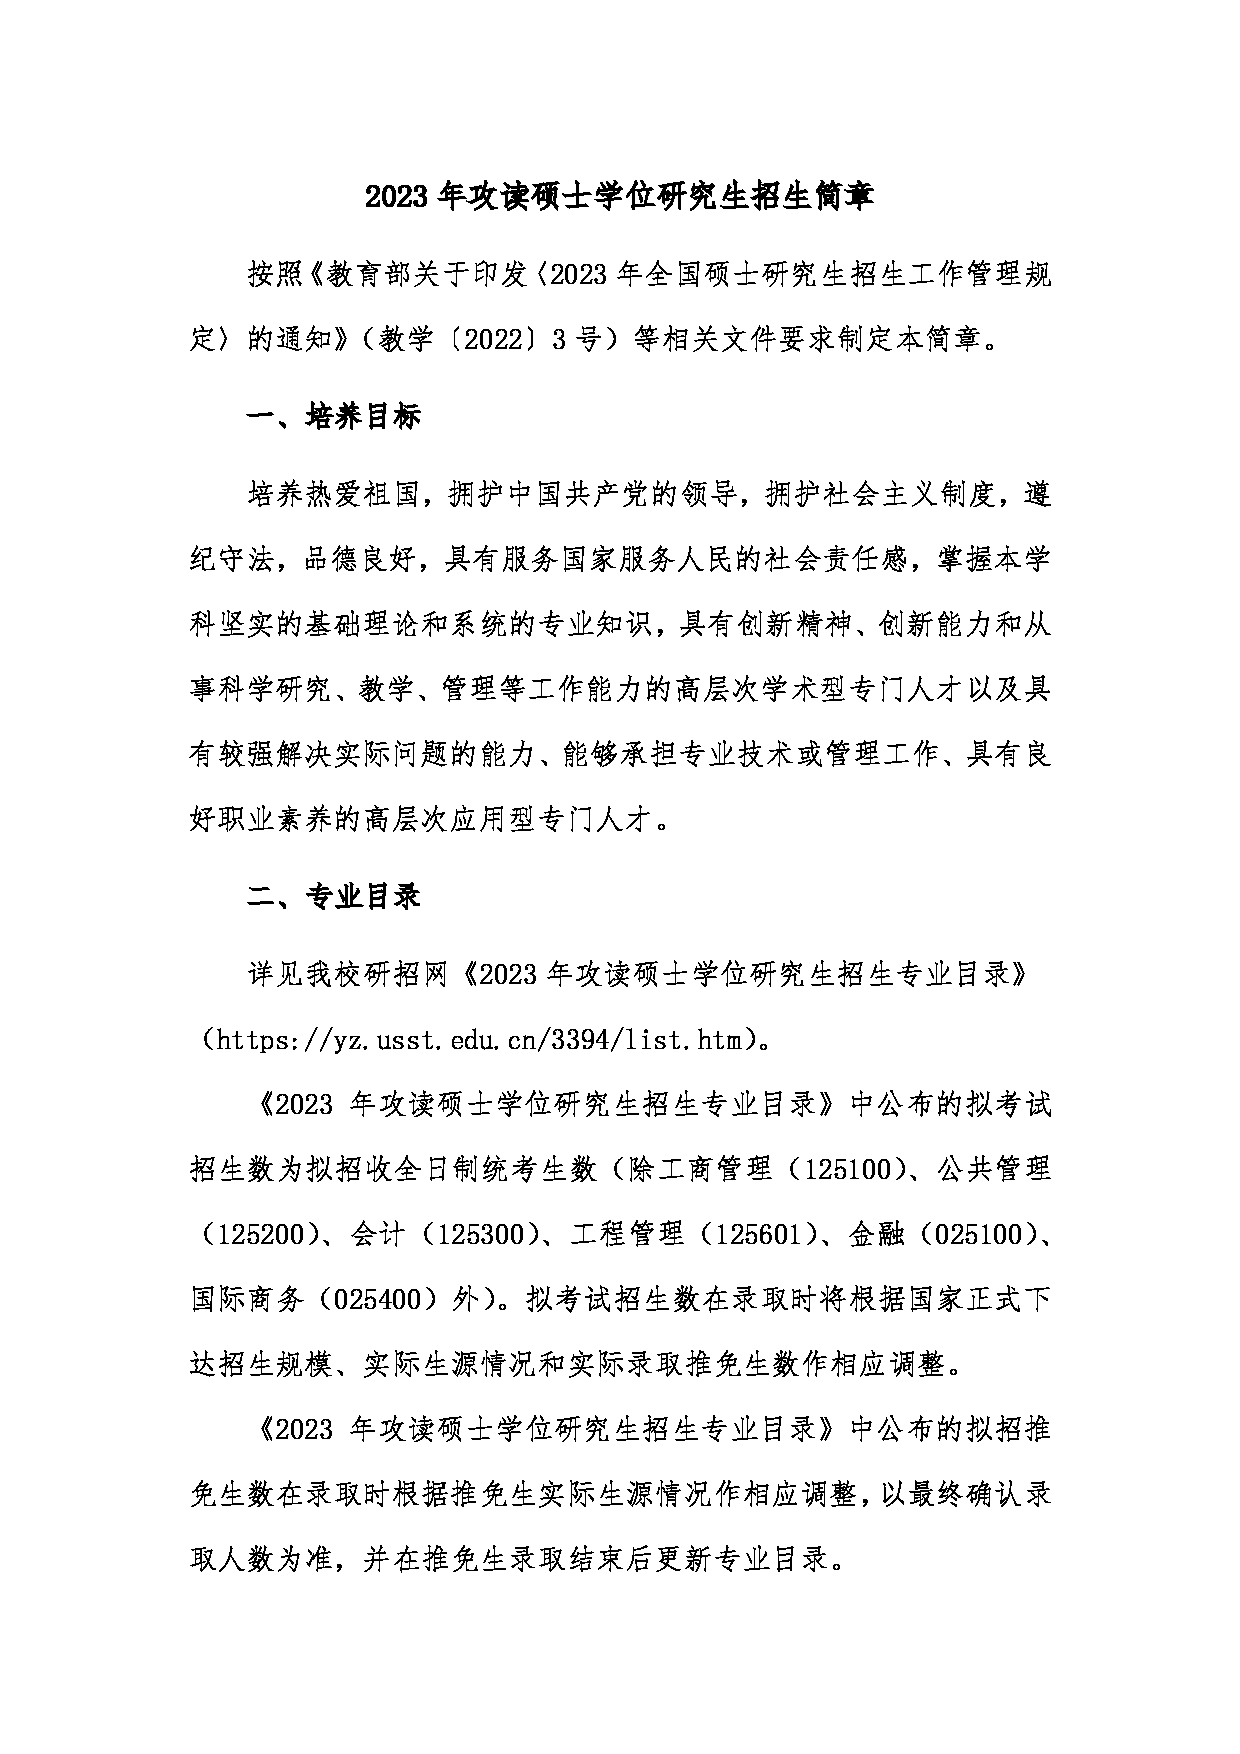 2023招生简章：上海理工大学2023年攻读硕士学位研究生招生简章第1页